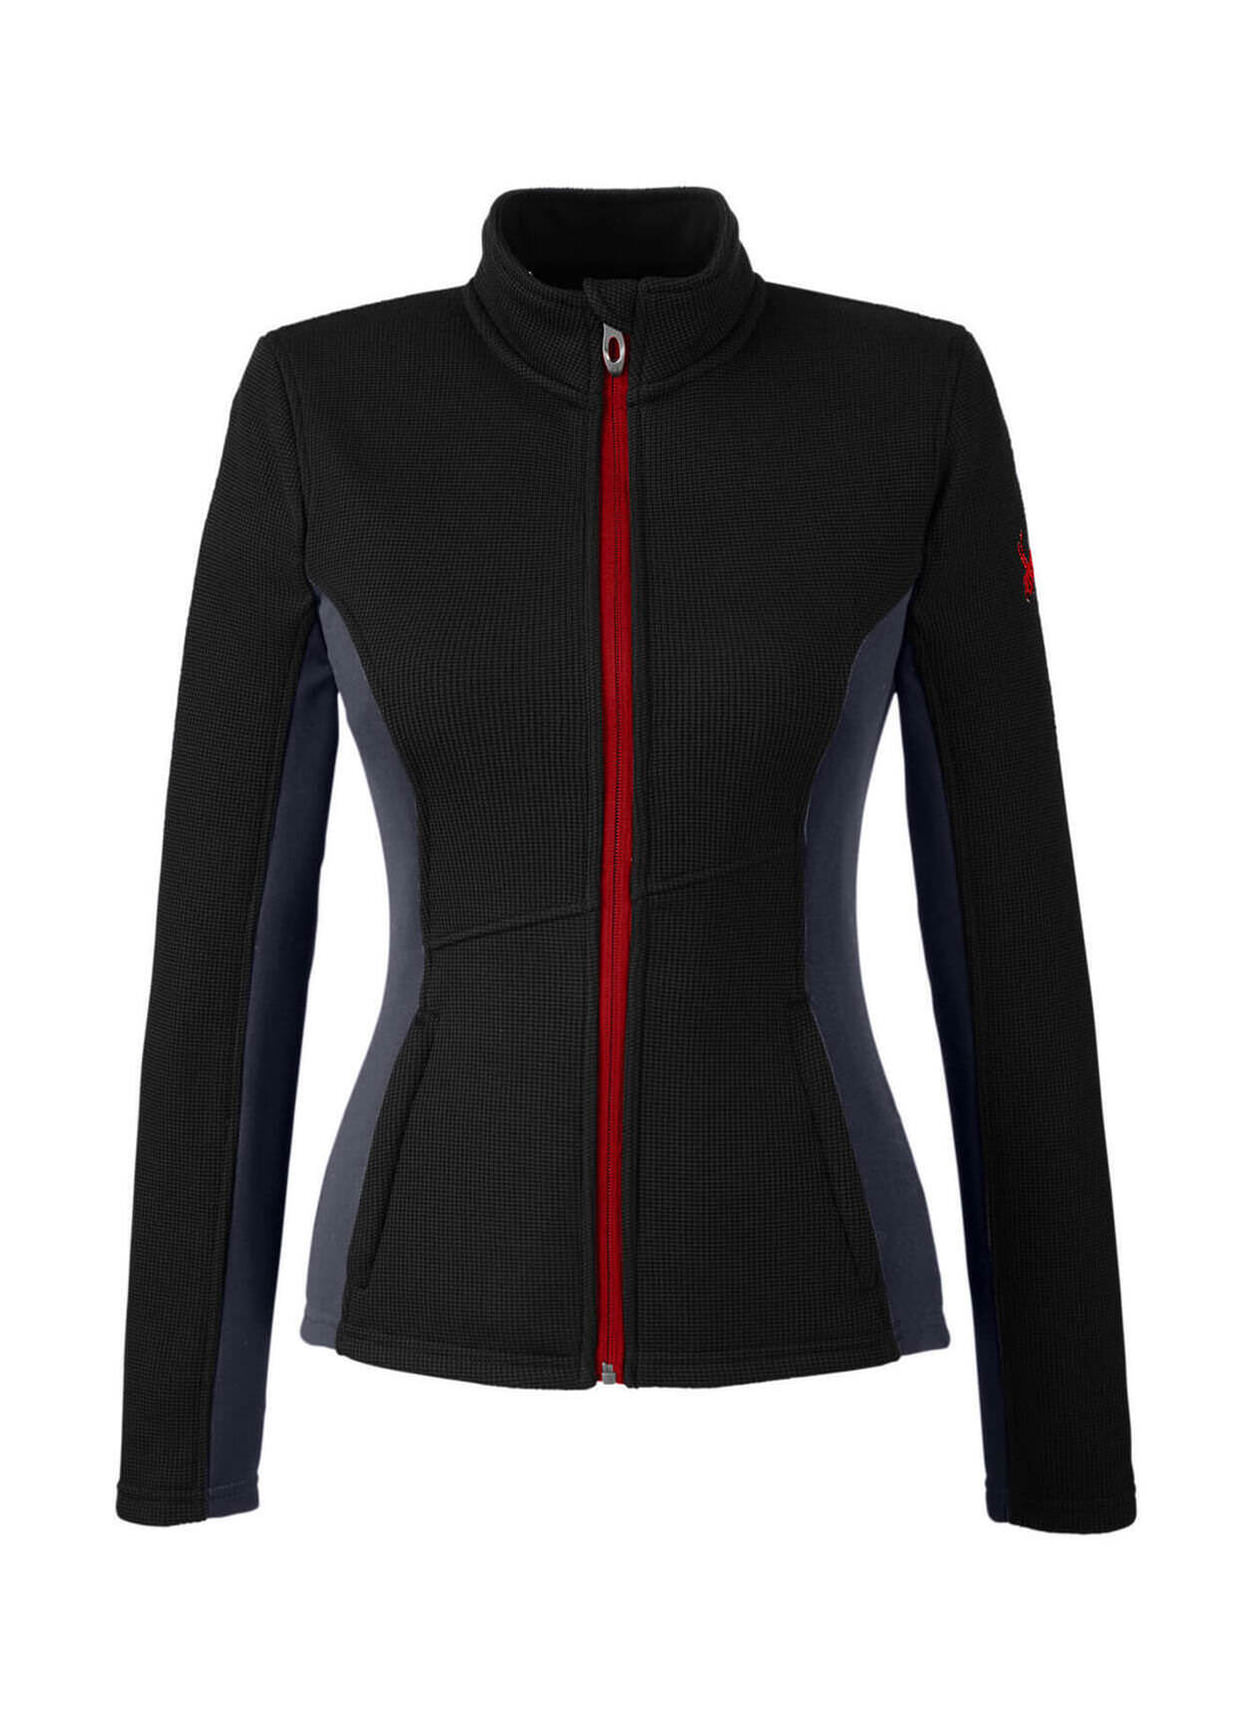 Spyder Men's Constant Full-Zip Sweater Fleece - Red/ Black/ Black - XL